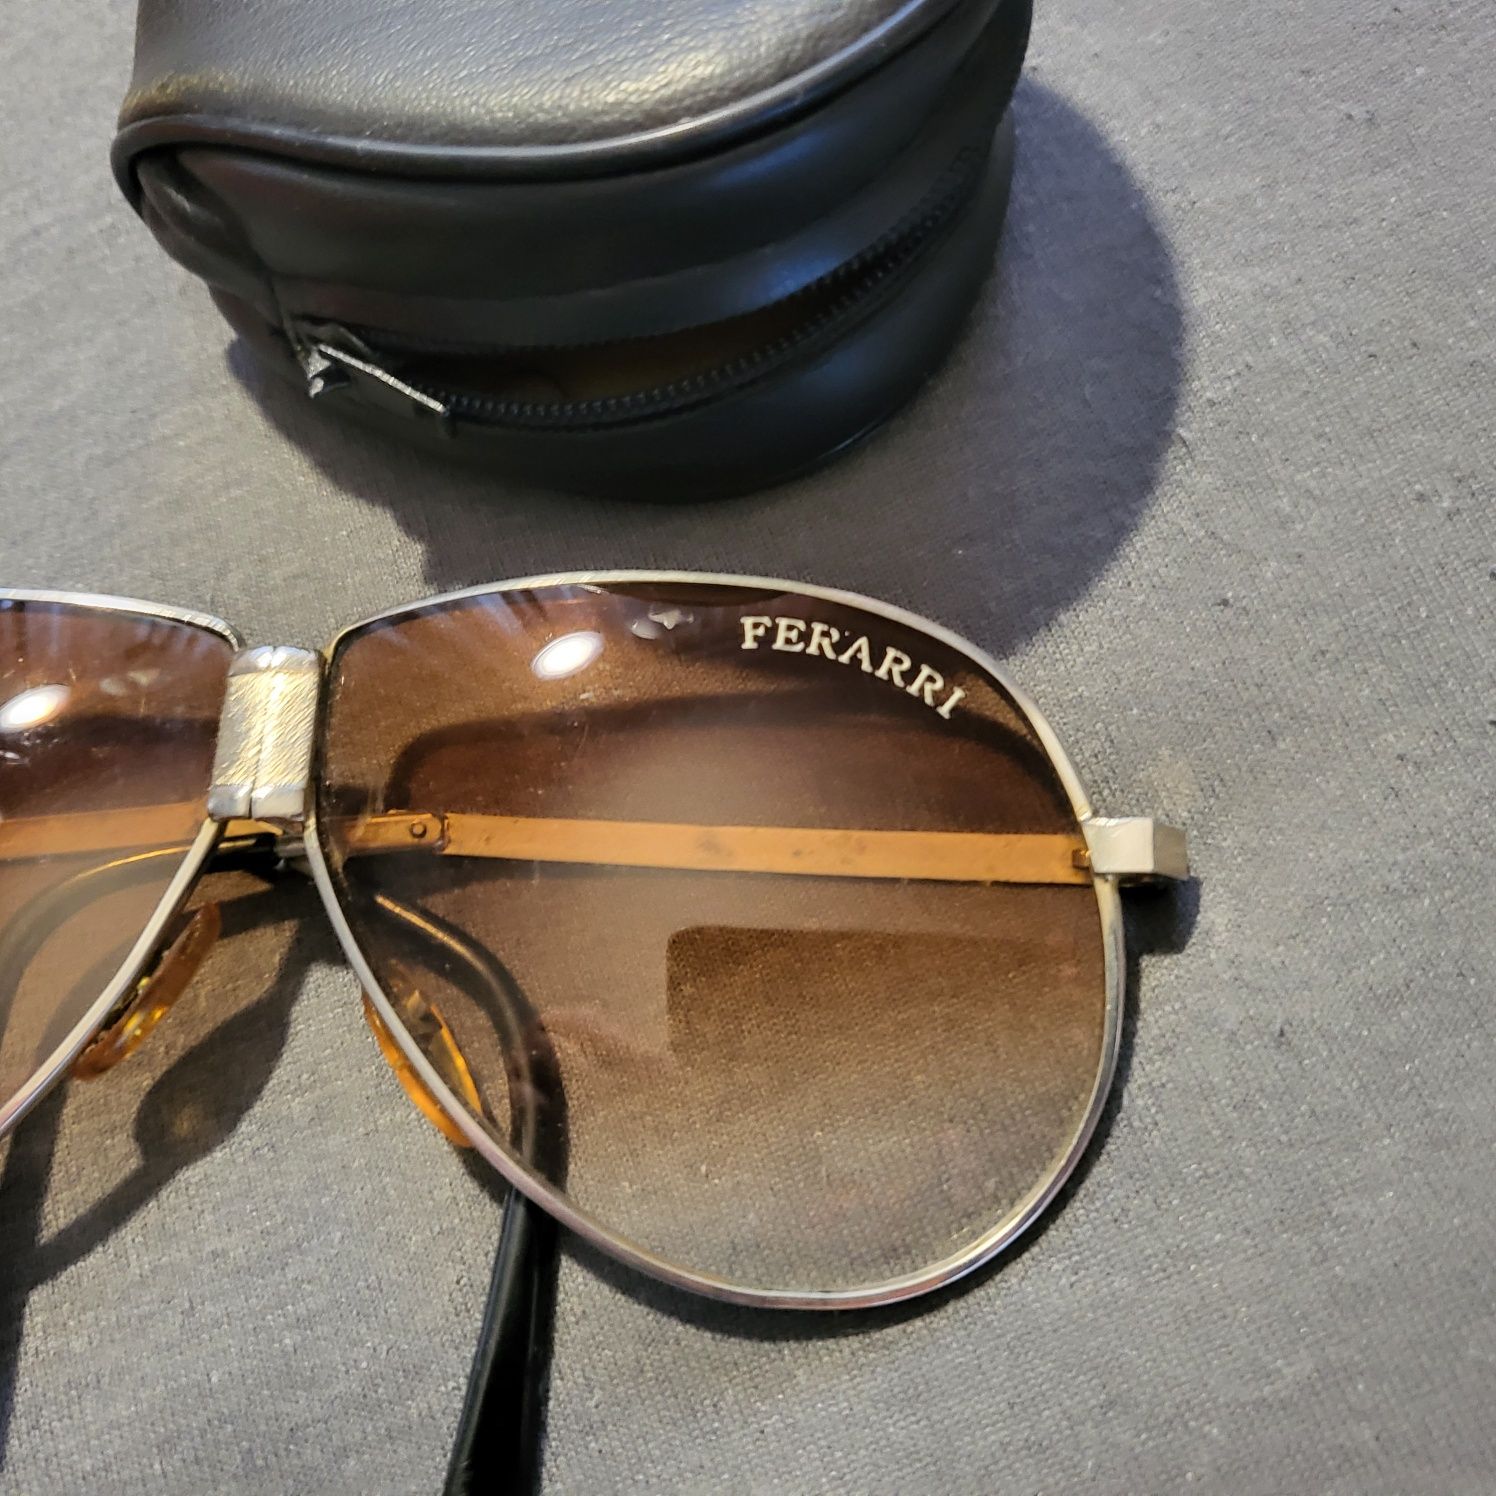 Oryginalne, składane okulary Ferrari, z filtrem polaryzacyjnym w etui.